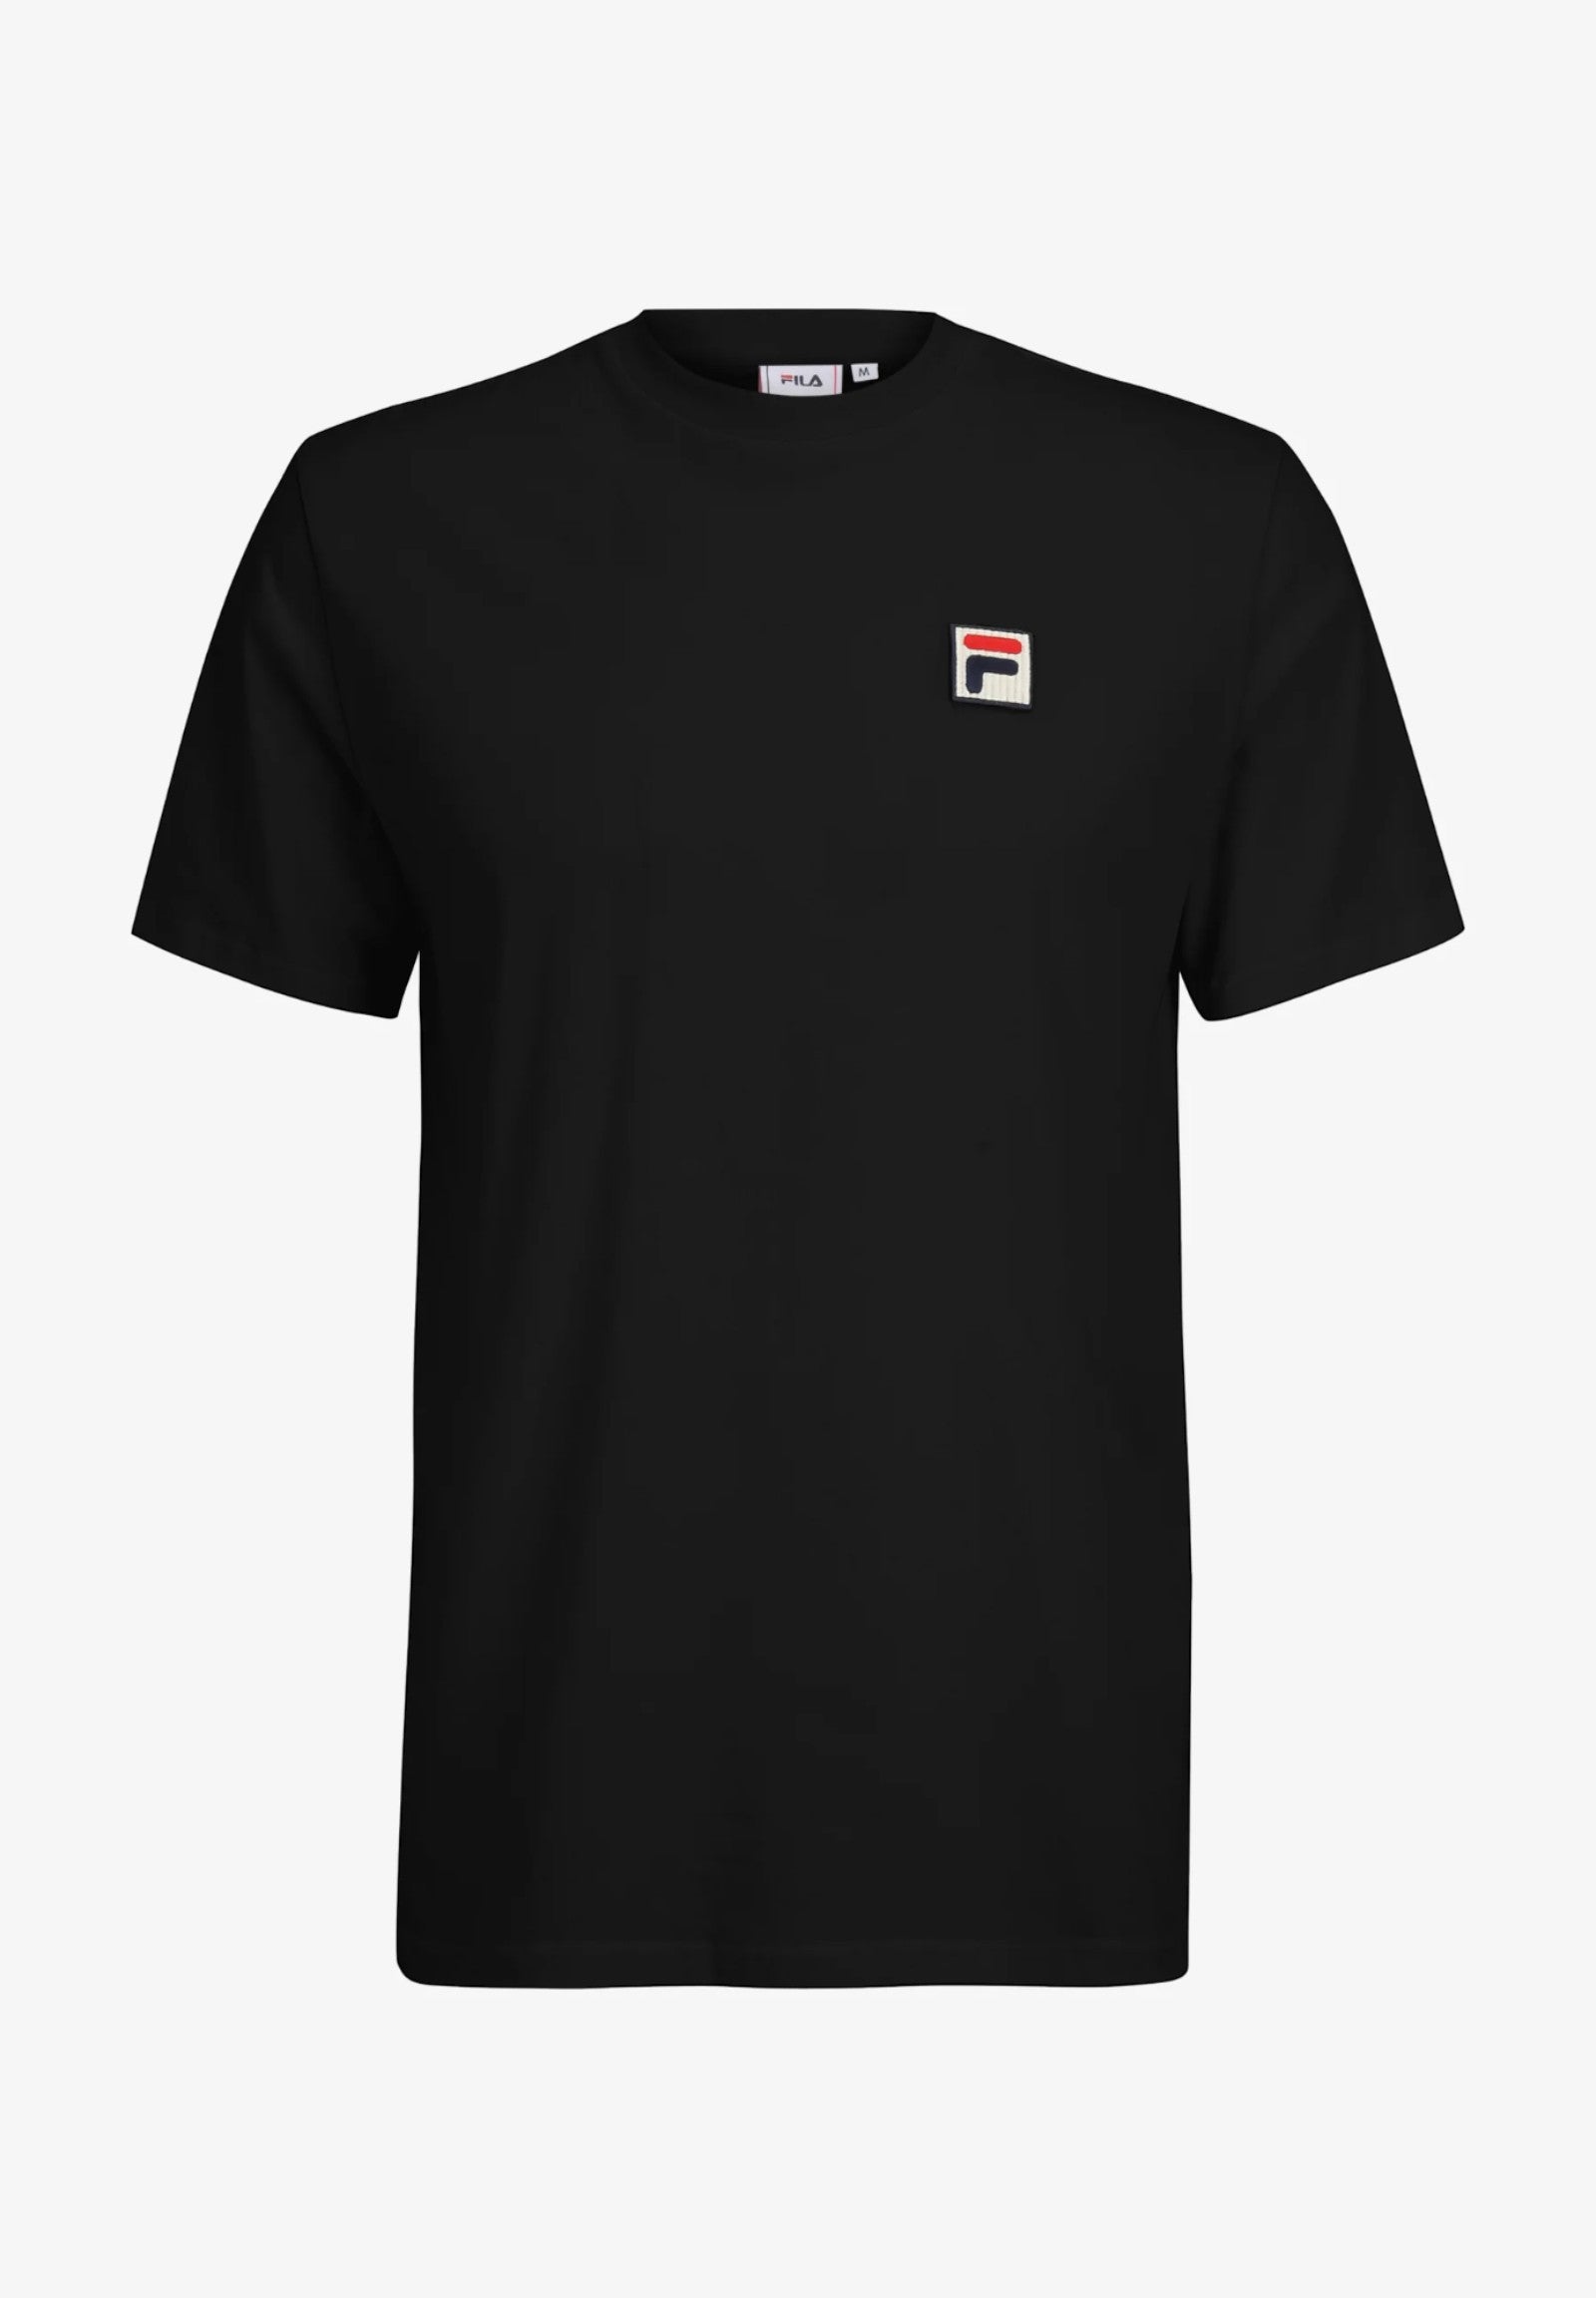 Fila T-Shirt* Fam0616 Black